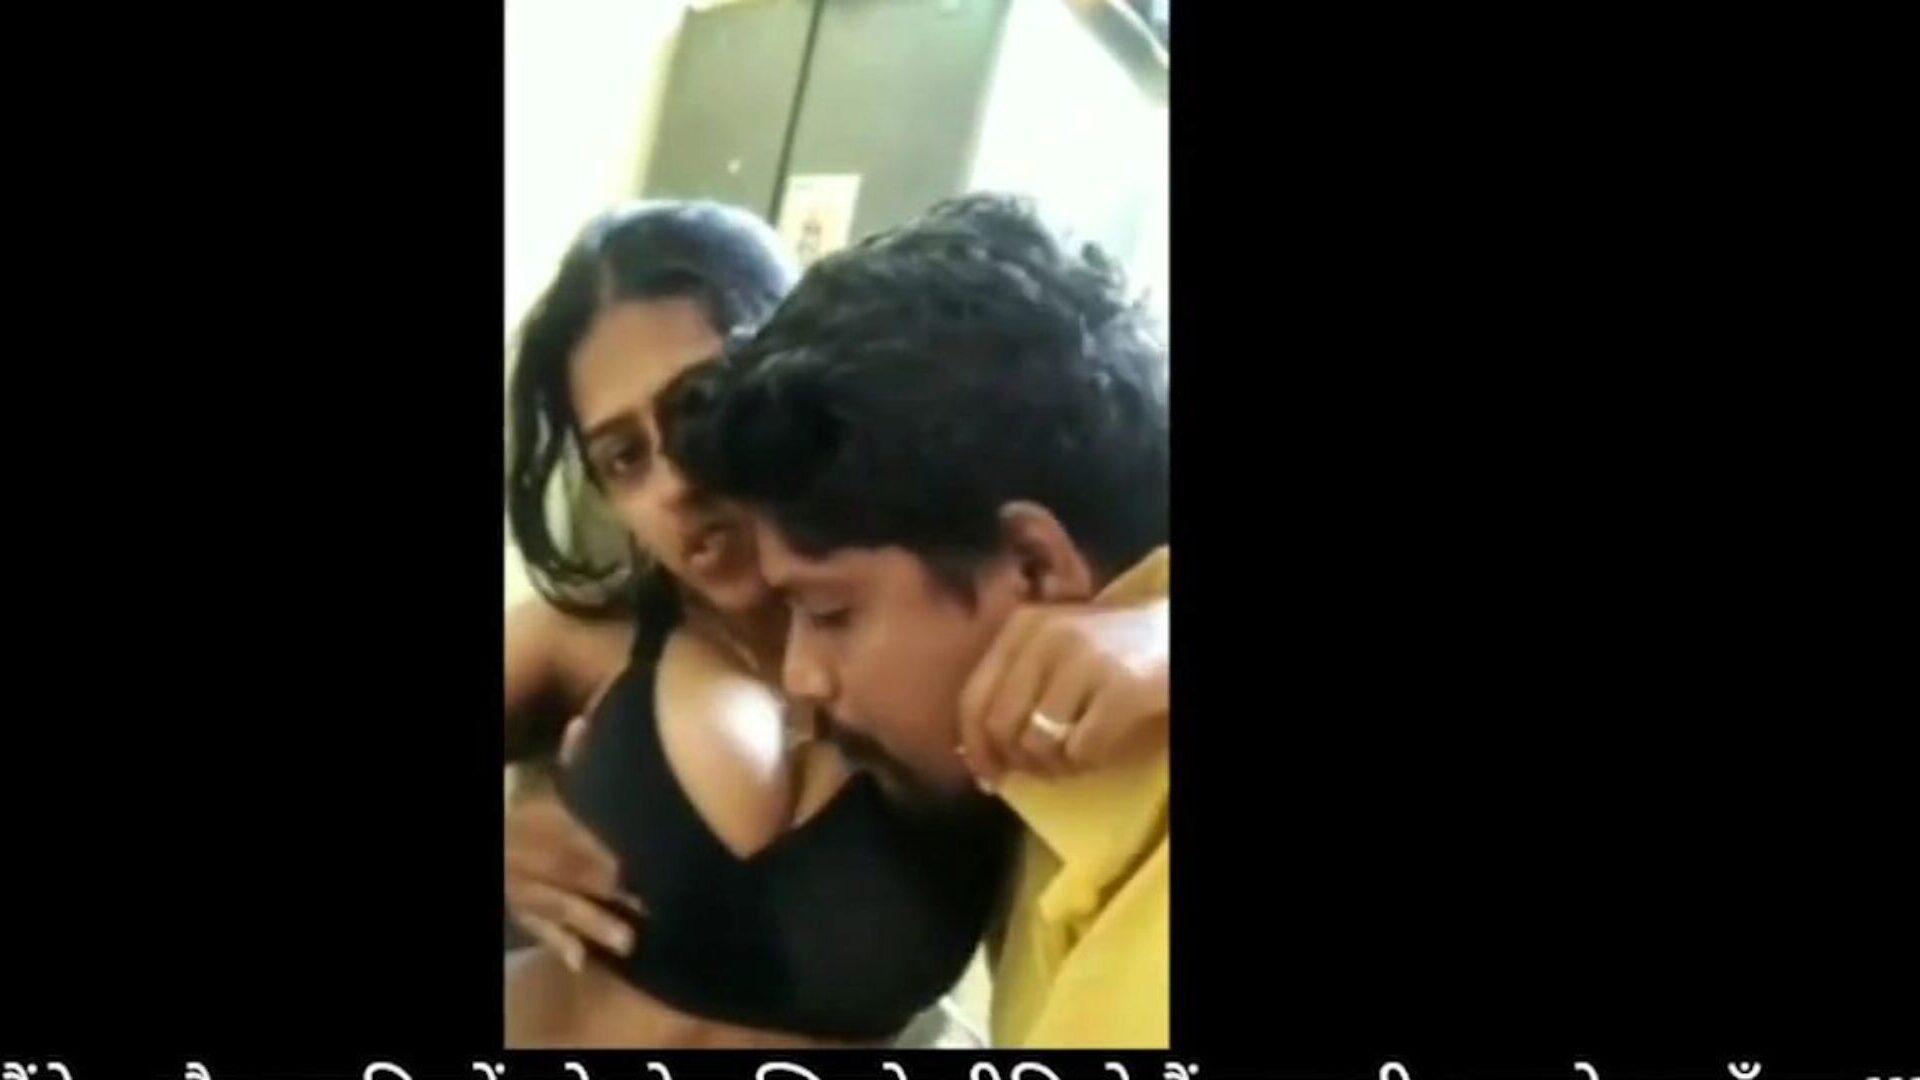 bhabhi devar s'amuse à la maison pendant le verrouillage: porno hd gratuit pour regarder bhabhi devar s'amuse à la maison pendant l'épisode de verrouillage sur xhamster - l'archive ultime du sexe à la maison gratuit indien gratuit hd xxx pornographie tube vids